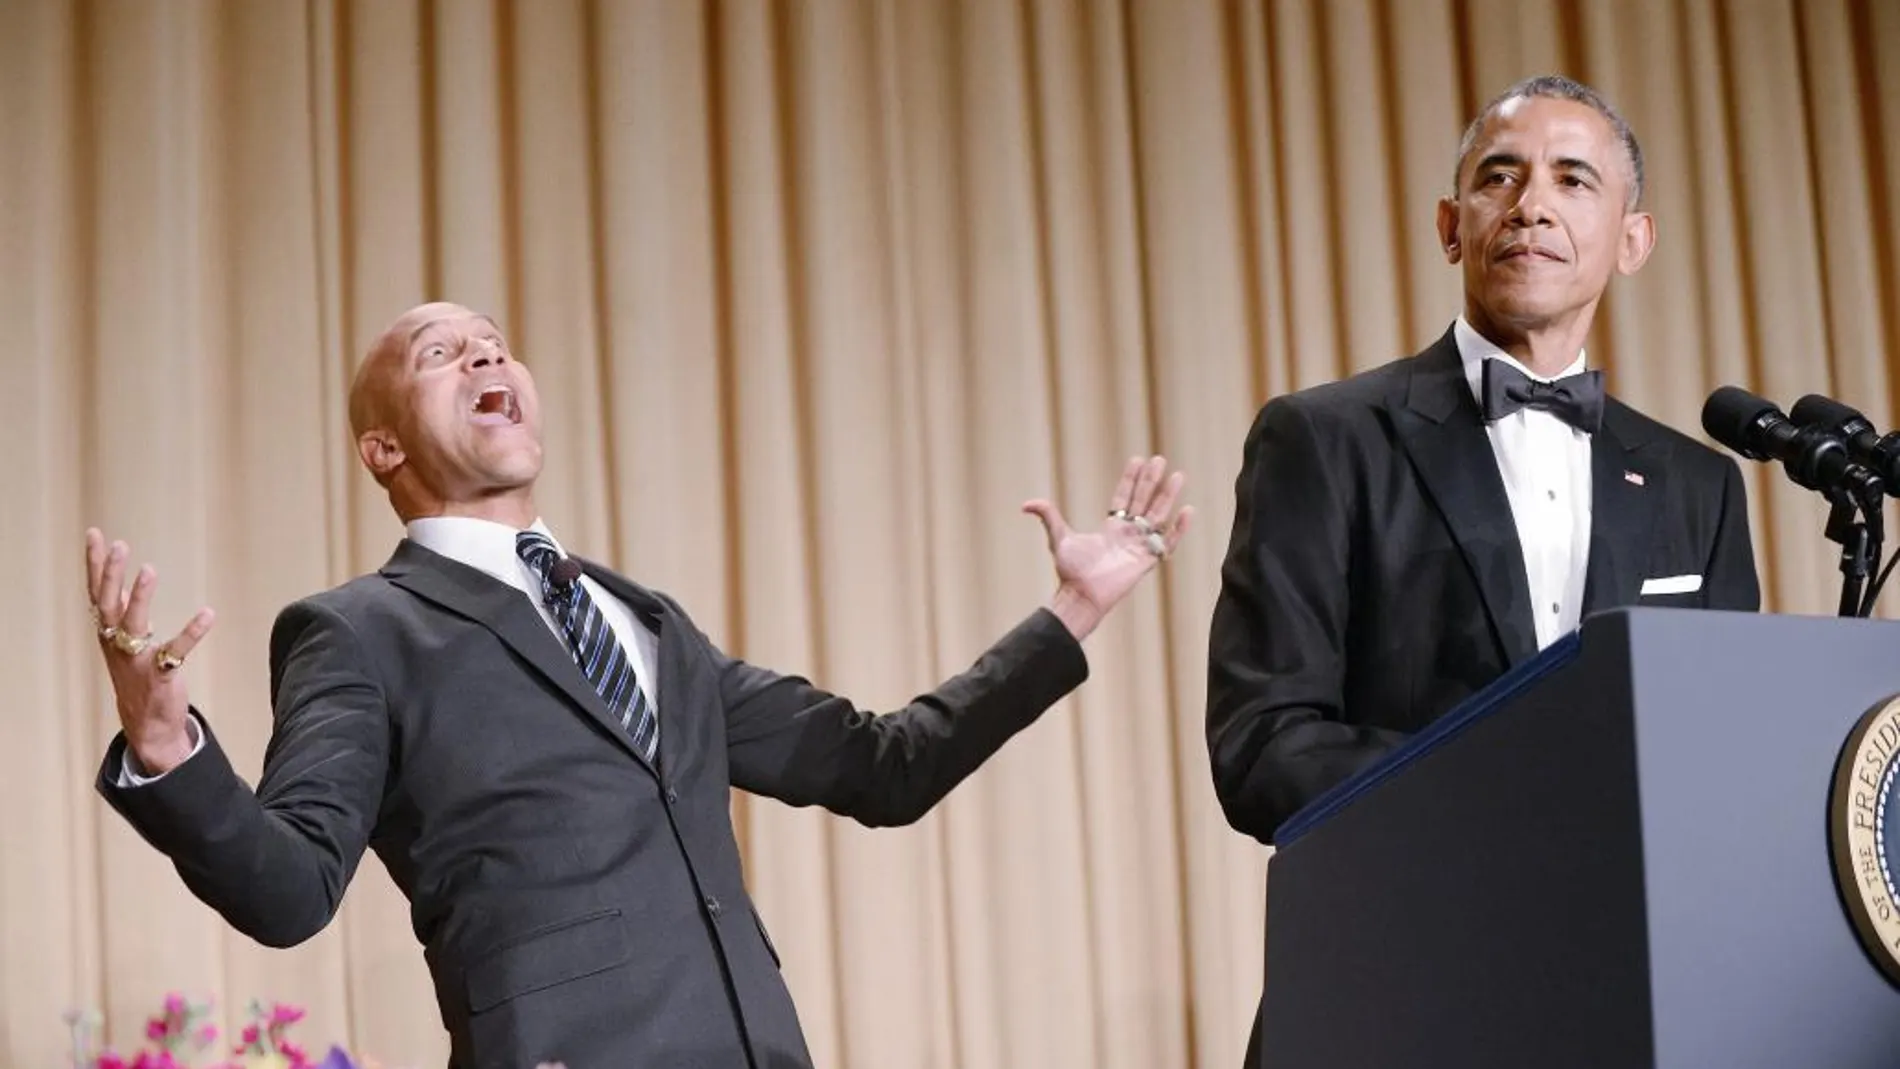 Barack Obama da su discurso mientras el actor Keegan-Michael Key gesticula tras de él en la cena de corresponsales.